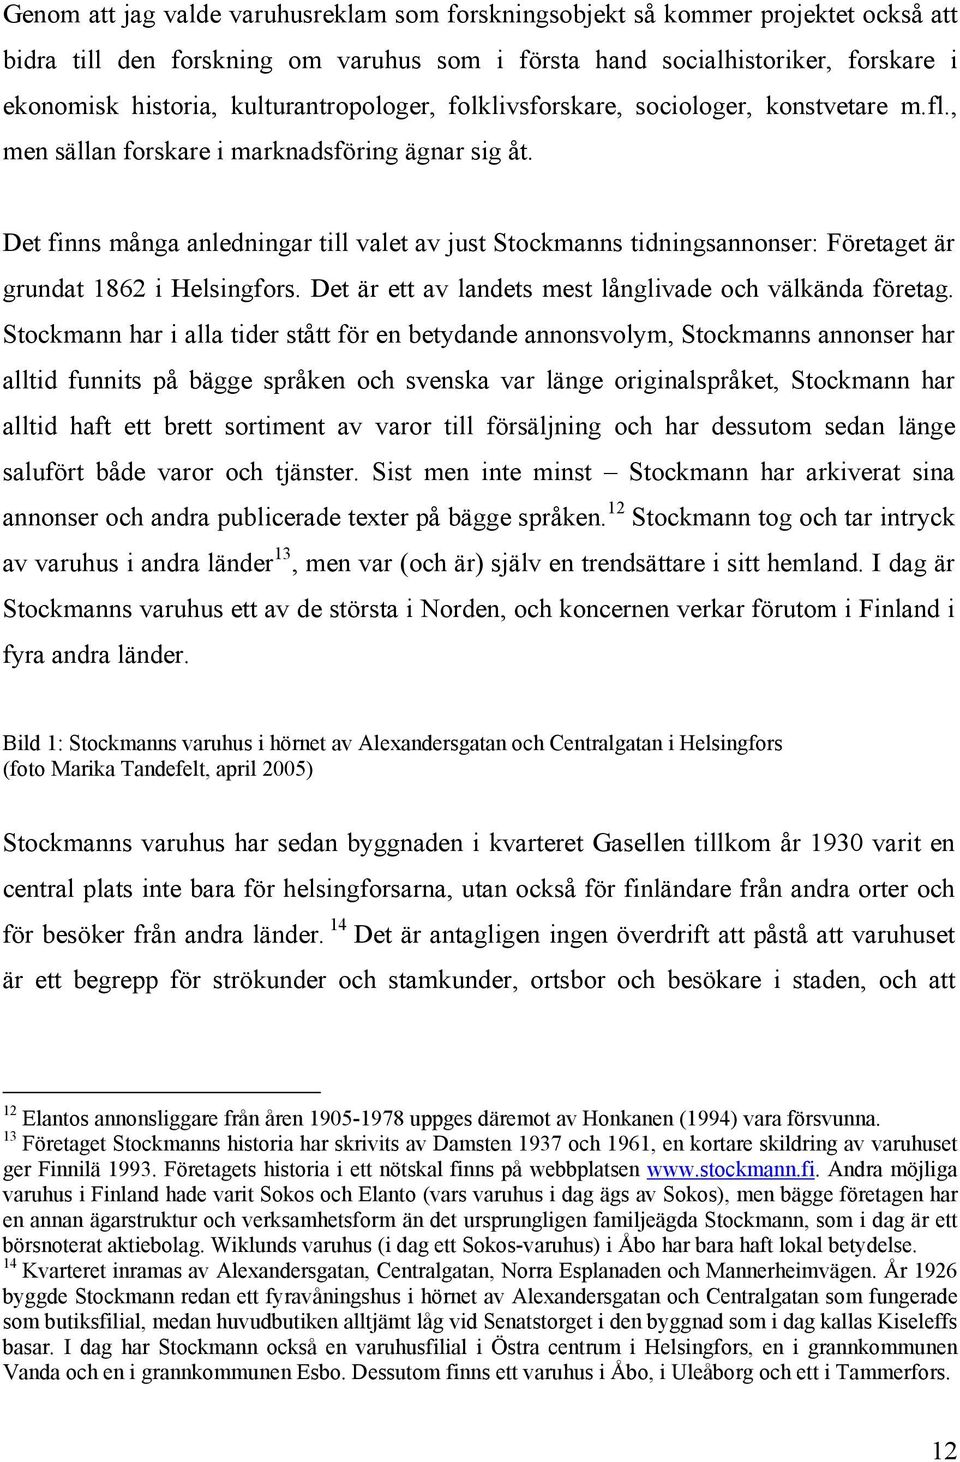 Det finns många anledningar till valet av just Stockmanns tidningsannonser: Företaget är grundat 1862 i Helsingfors. Det är ett av landets mest långlivade och välkända företag.